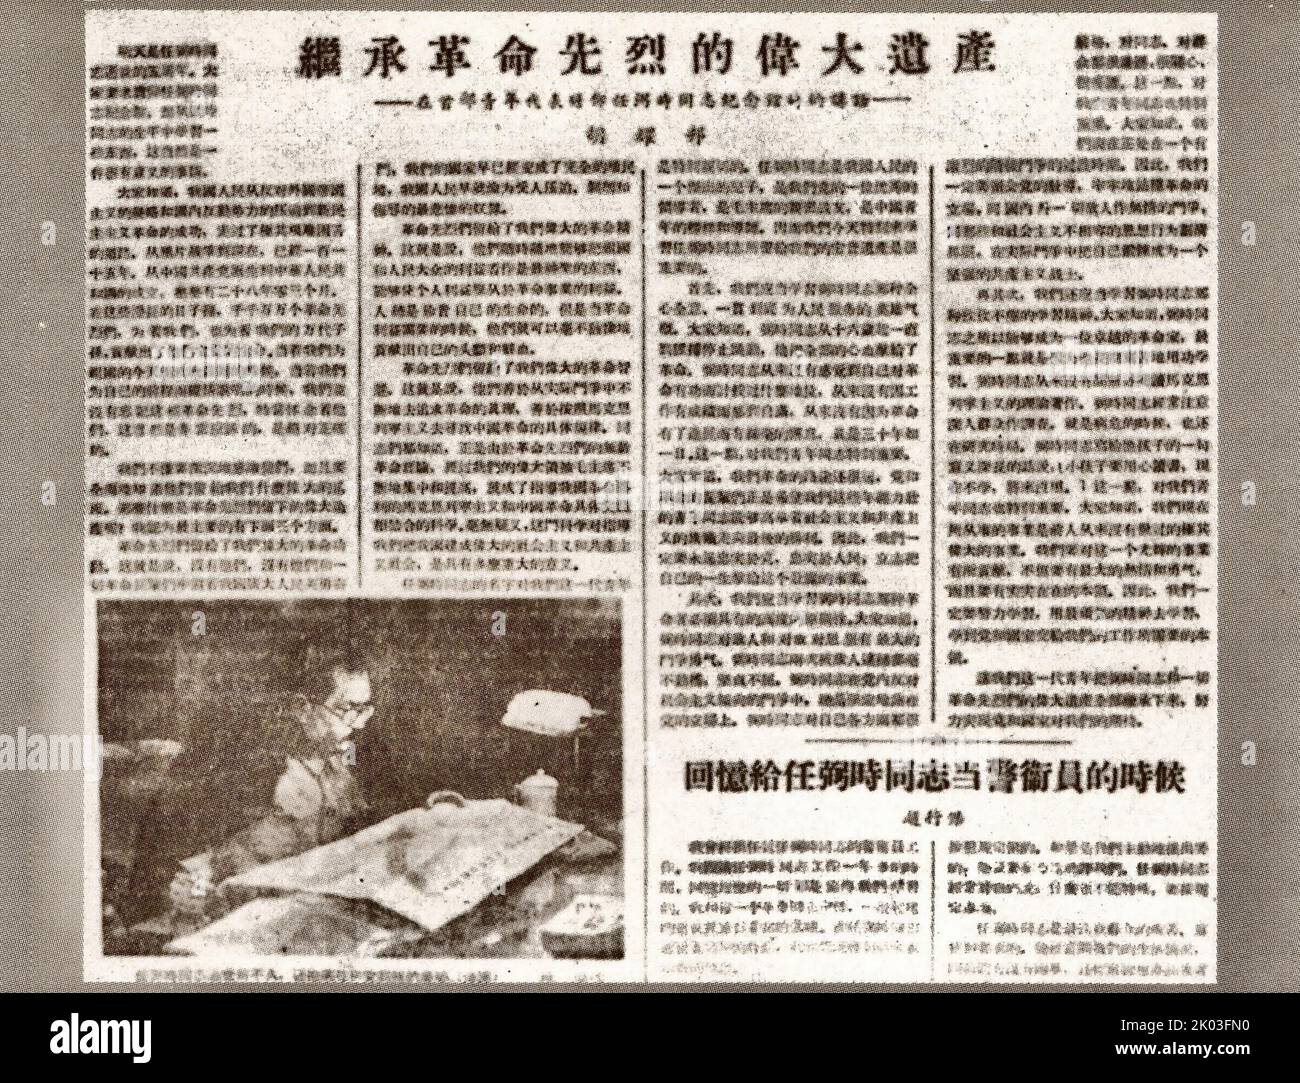 HU Yaobang, il primo segretario del Comitato Centrale della Lega Giovanile, ha visitato l'ex residenza del compagno Ren Bishi a Pechino: Ren Bishi era un leader militare e politico nel primo partito comunista cinese. Nei primi anni '1930s, Foto Stock